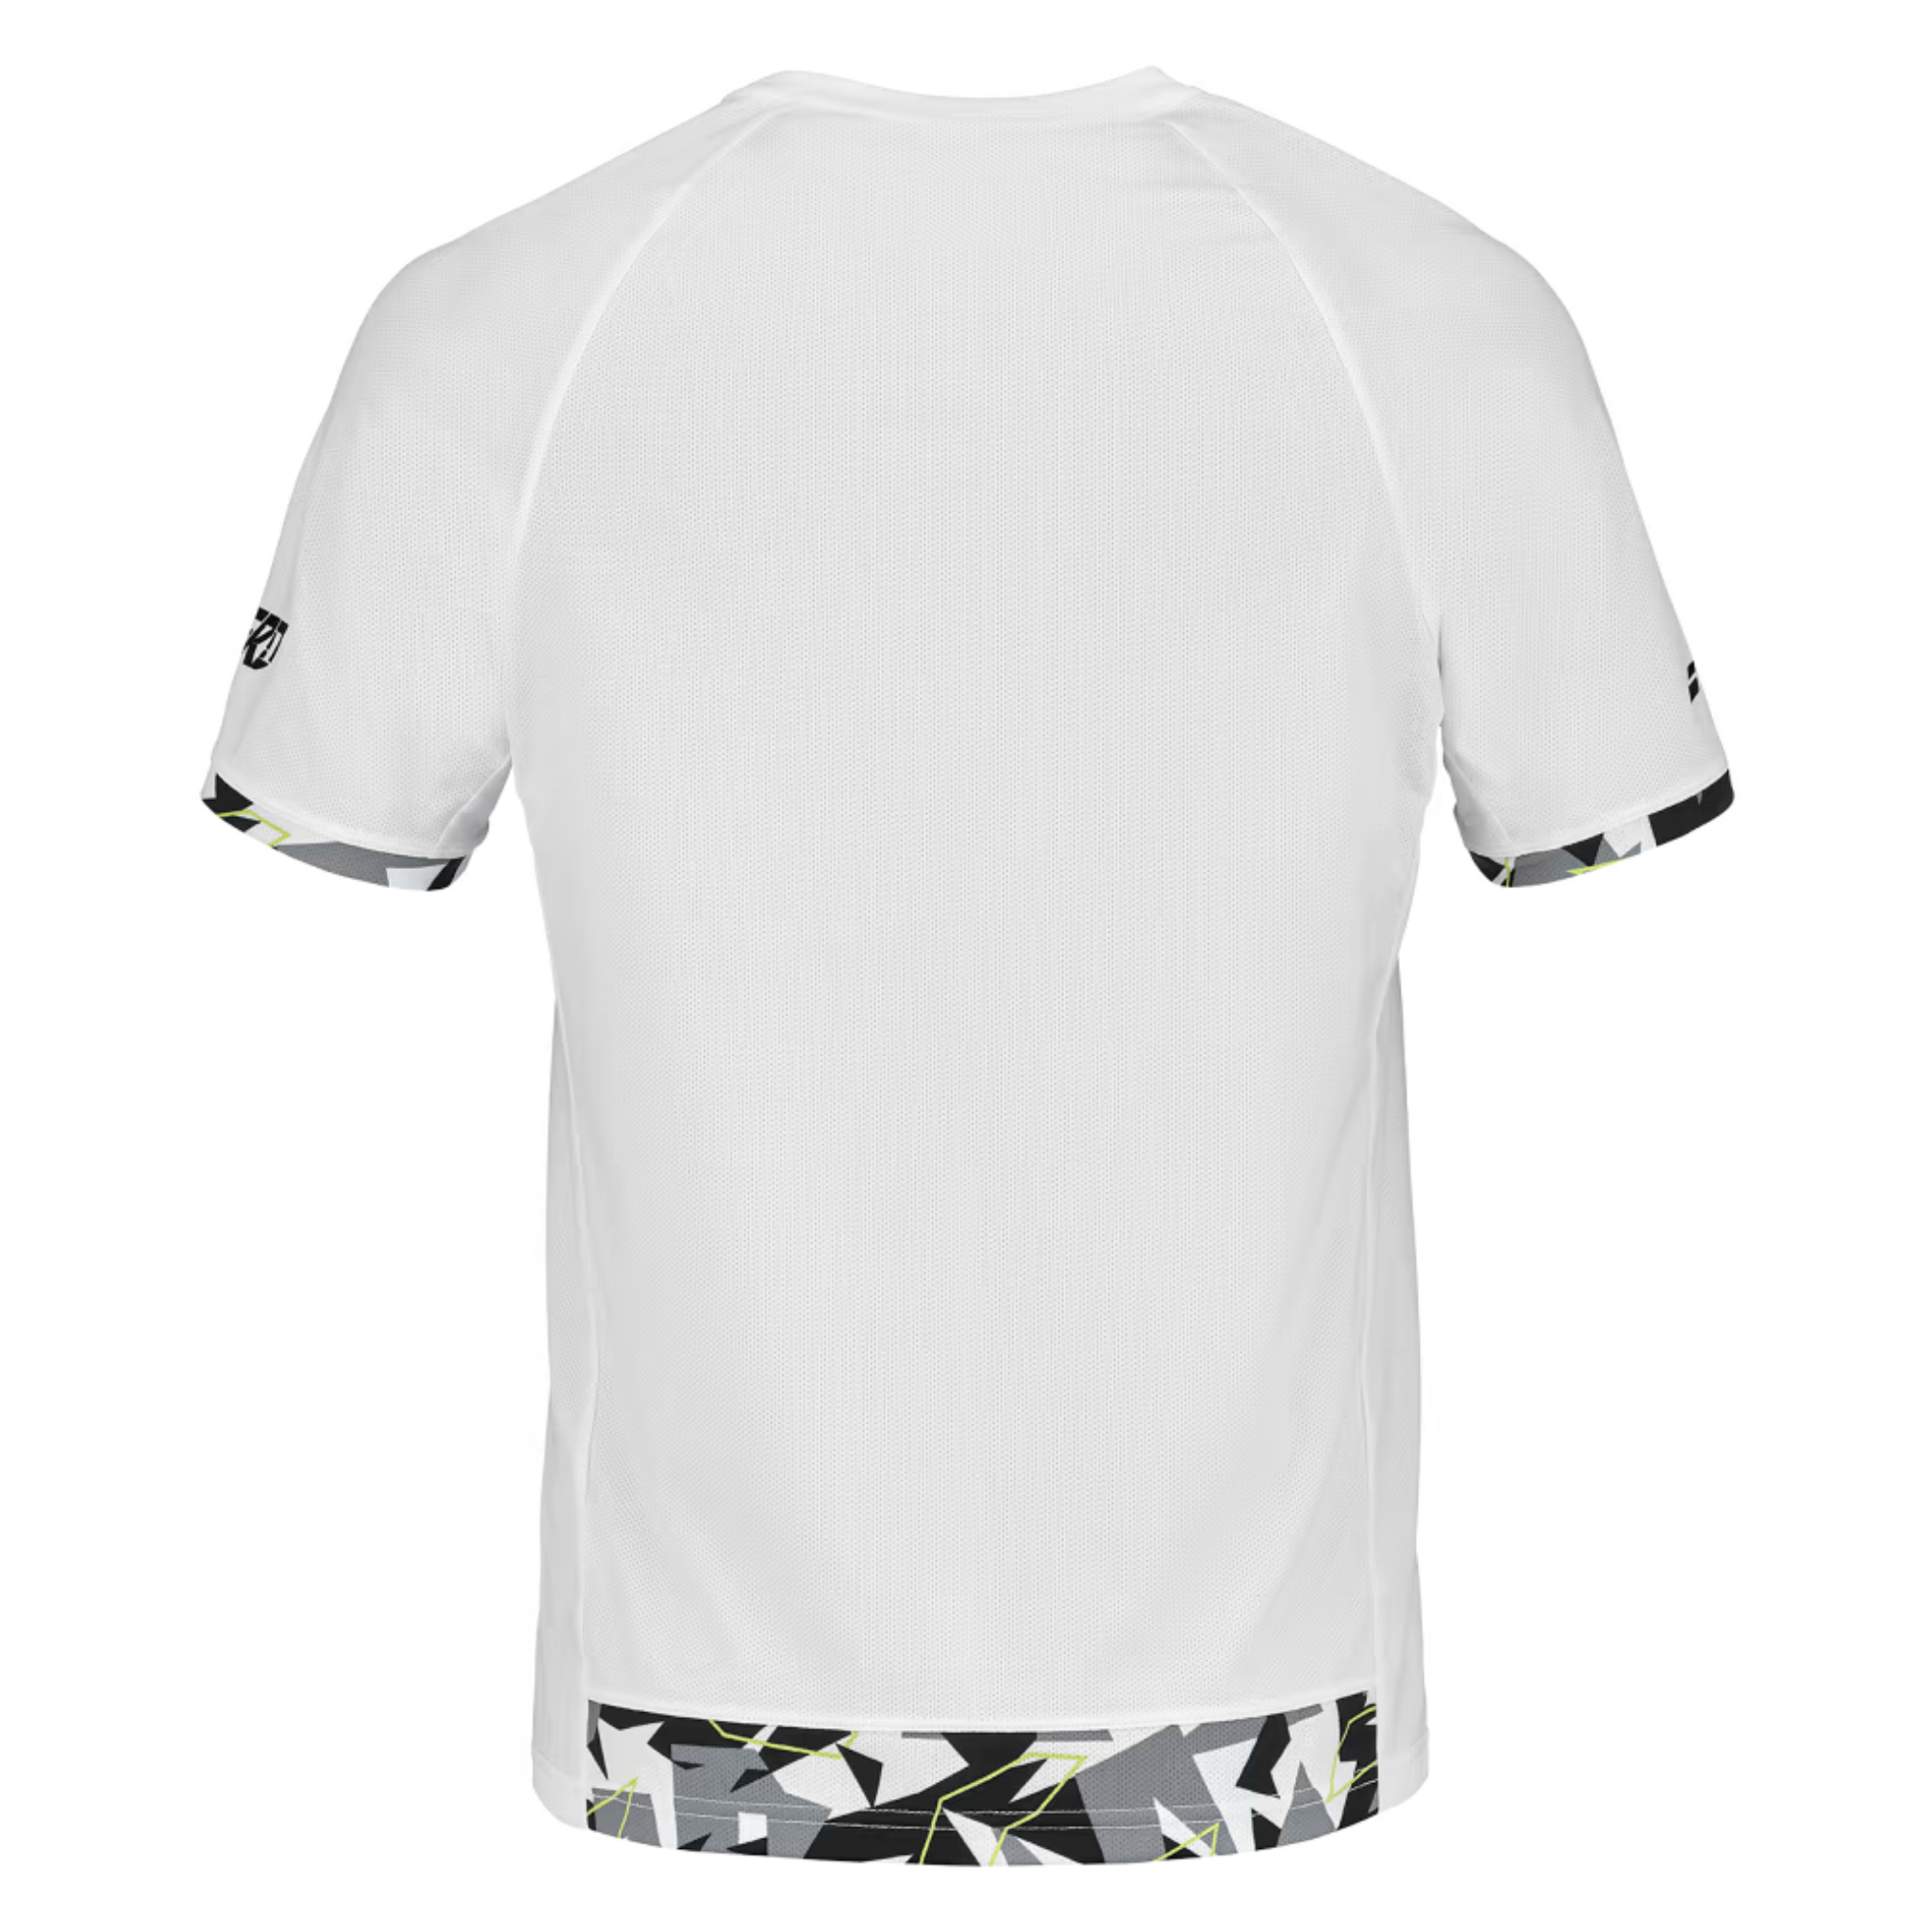 Babolat Aero Crew Neck Men's T-shirt > White